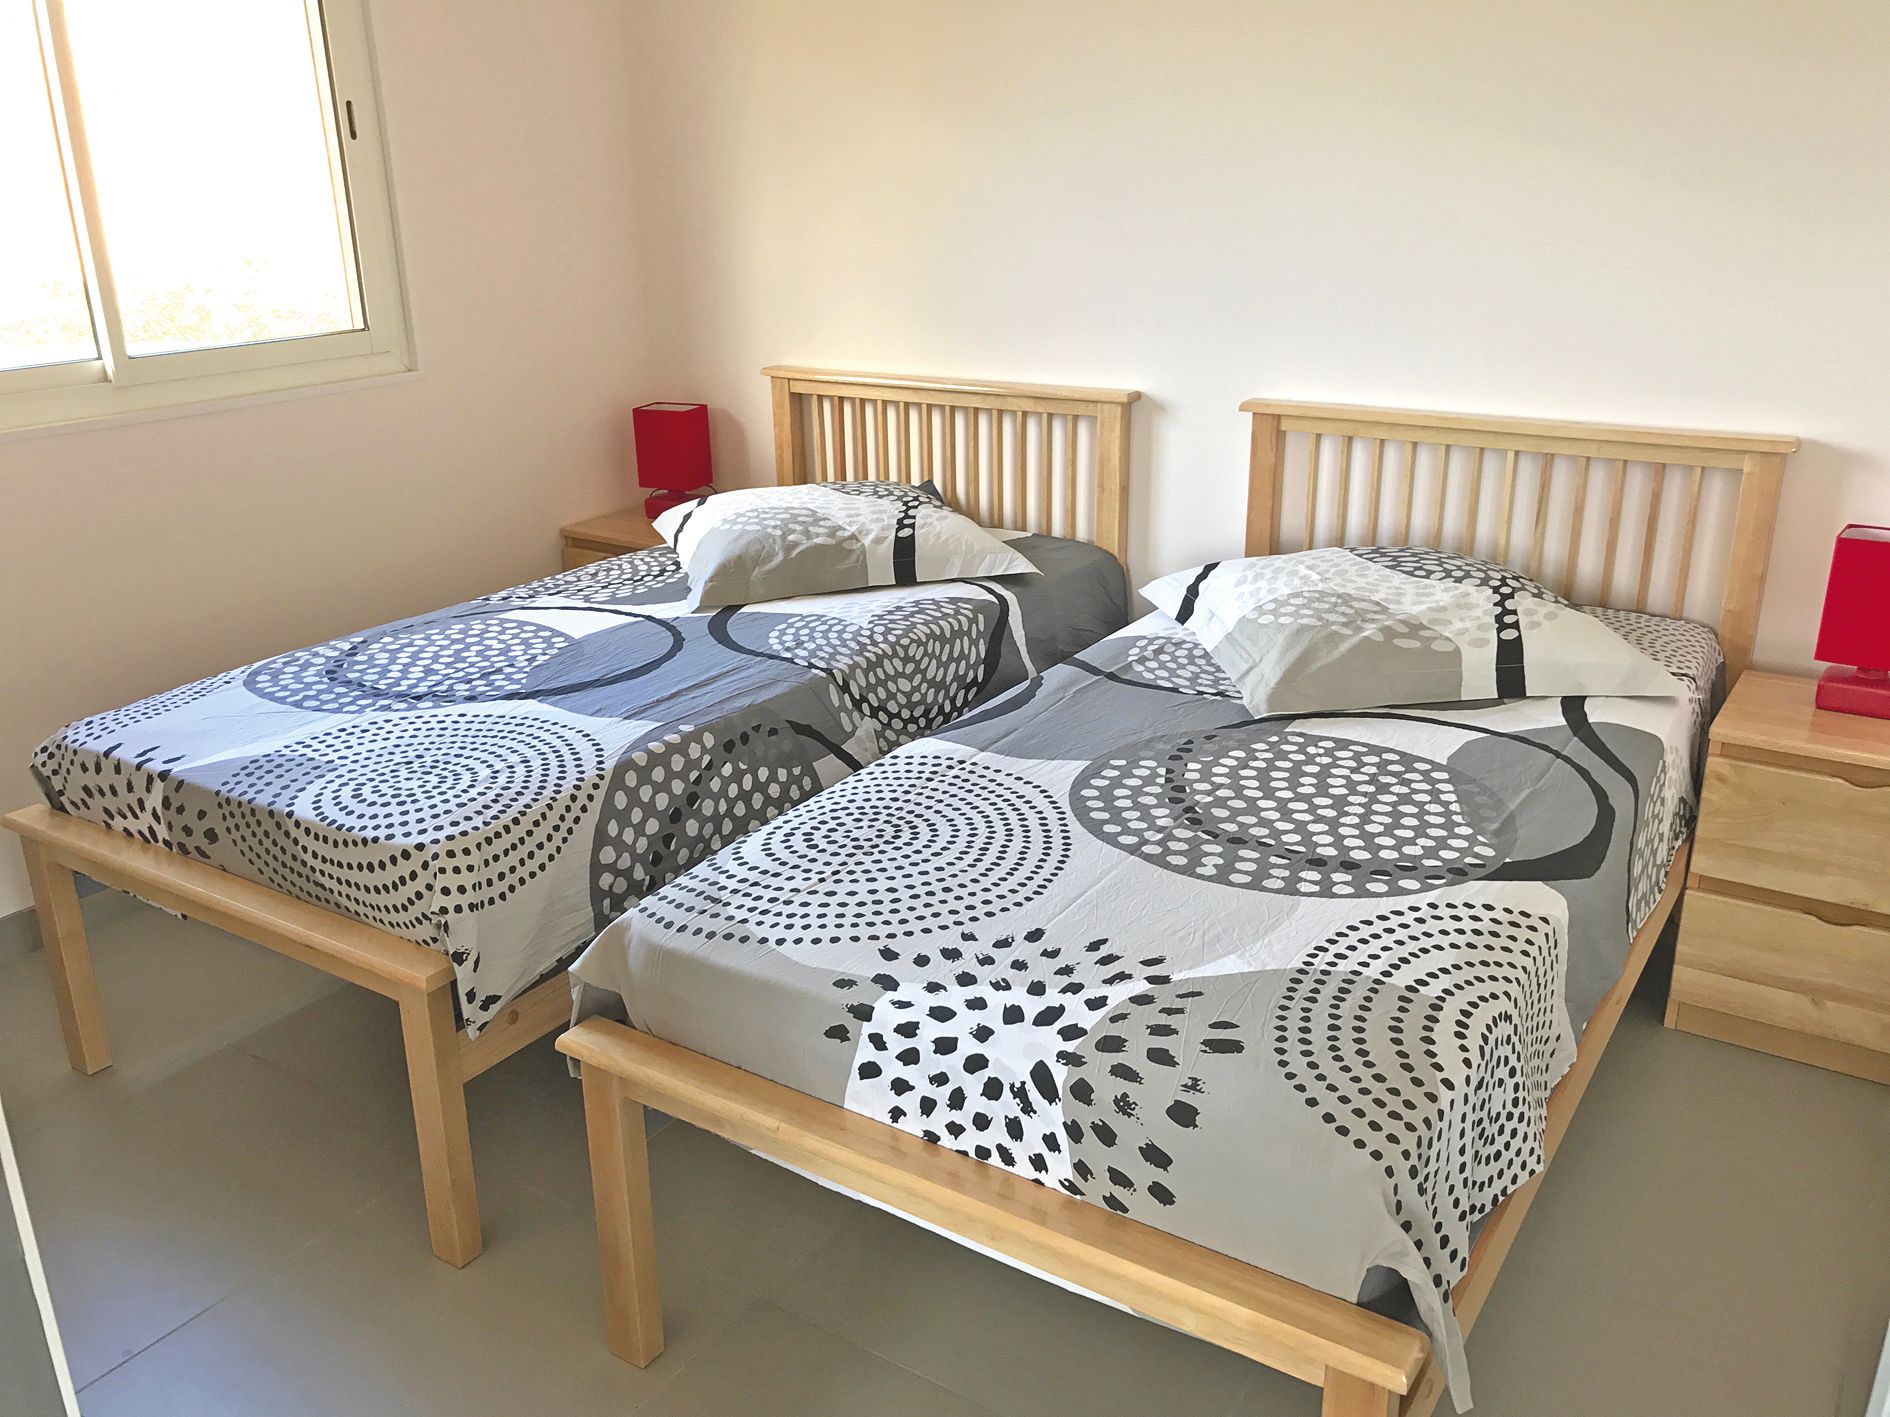 Chaque chalet compte deux chambres avec deux lits simples, un lit double et un canapé-lit dans le séjour.